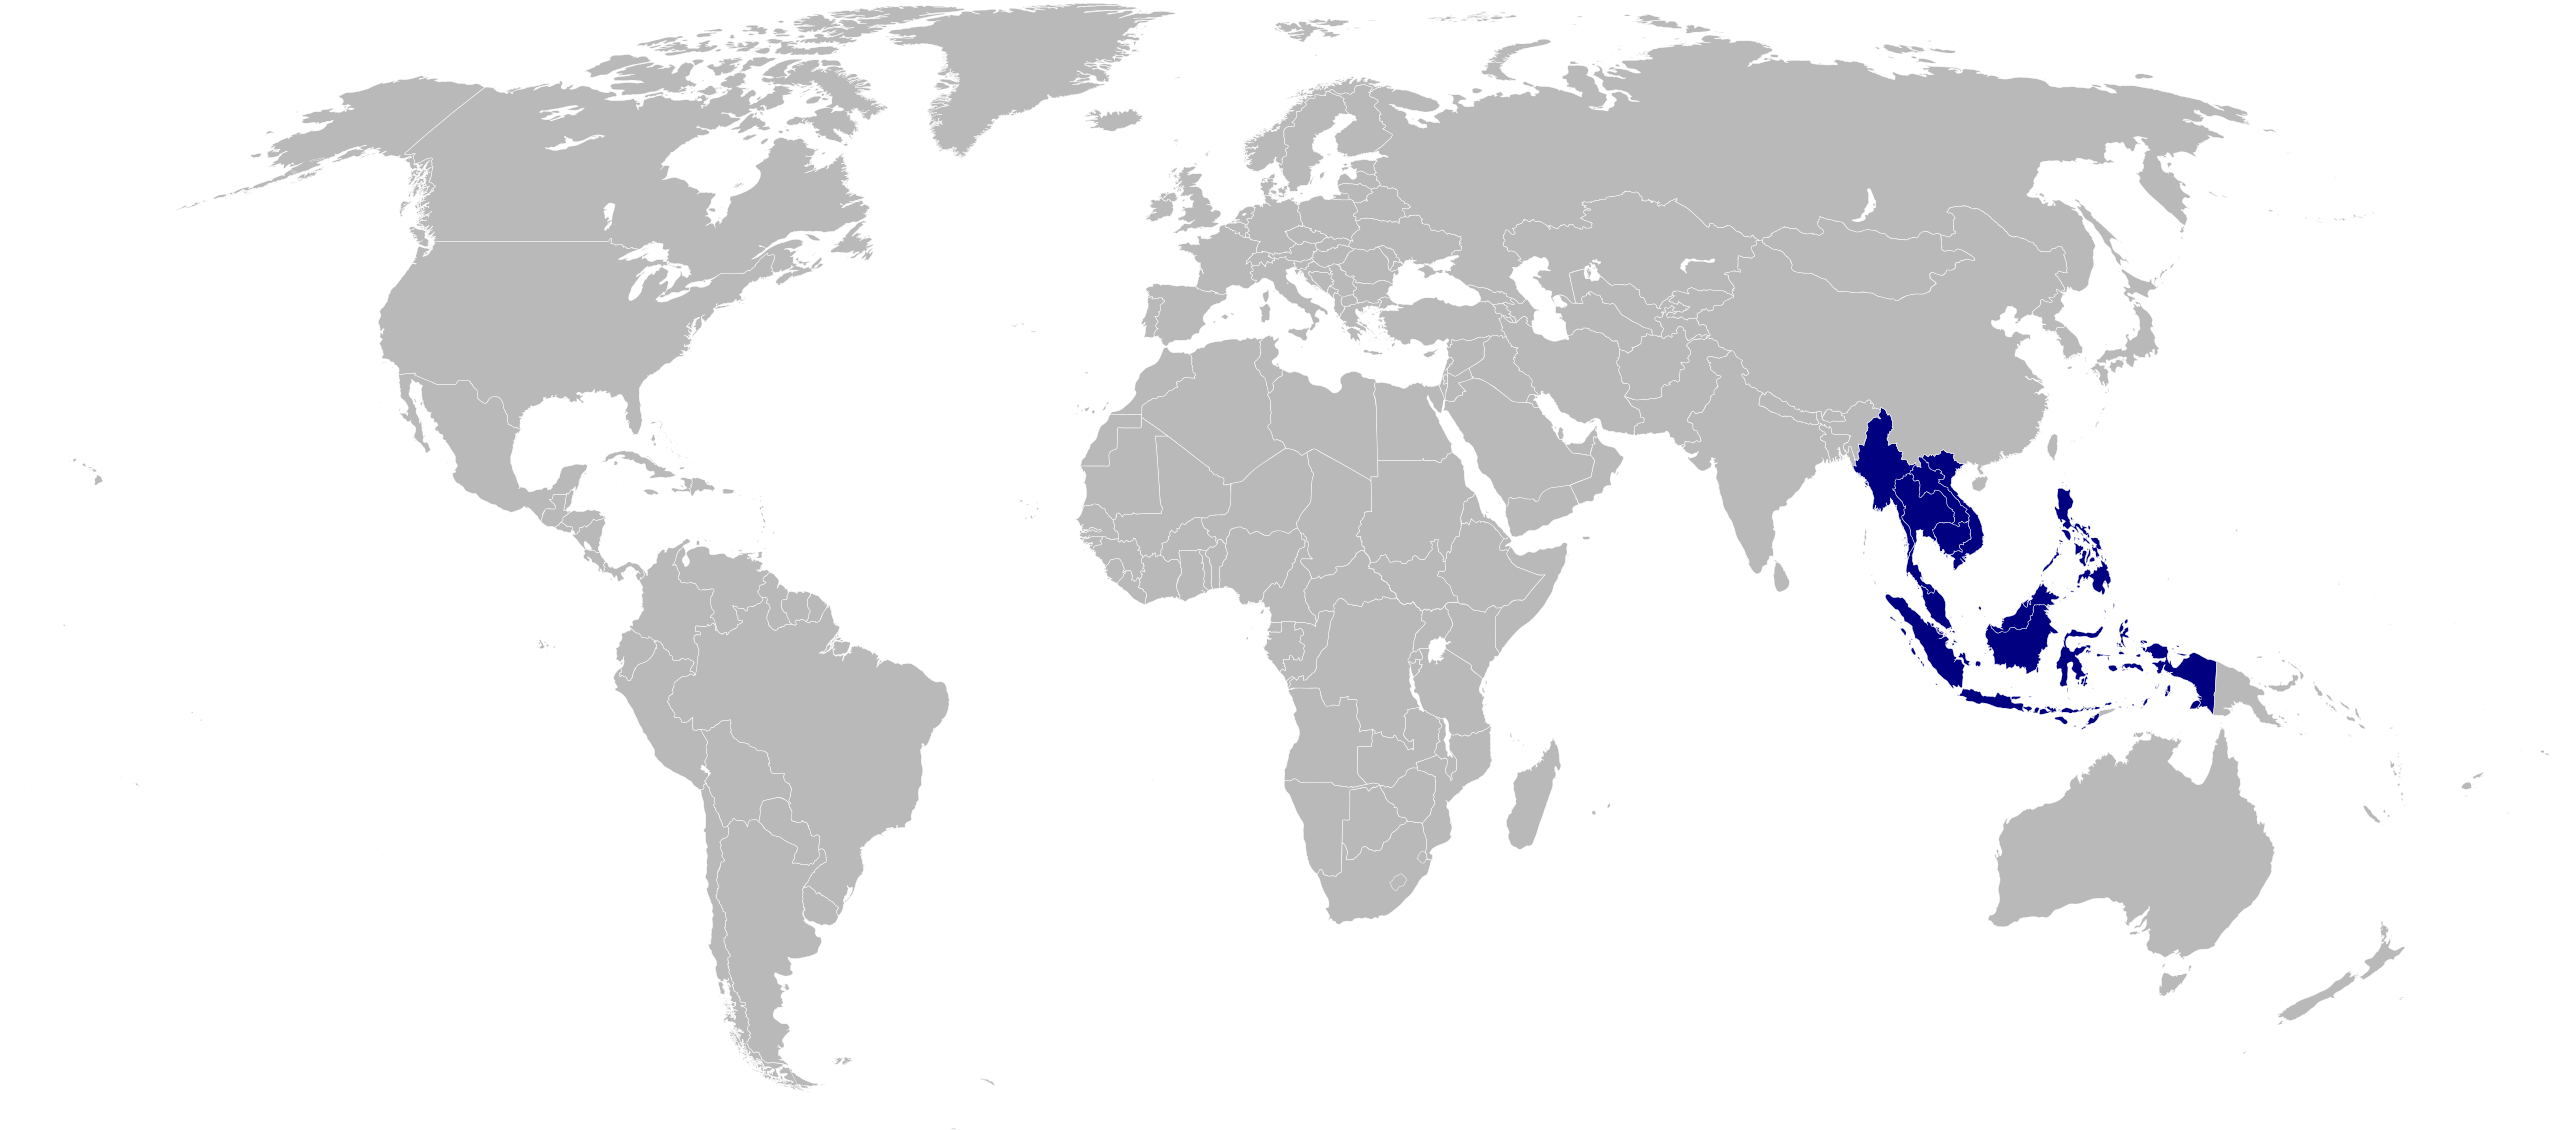 Страны Ассоциации государств Юго-Восточной Азии (ASEAN)